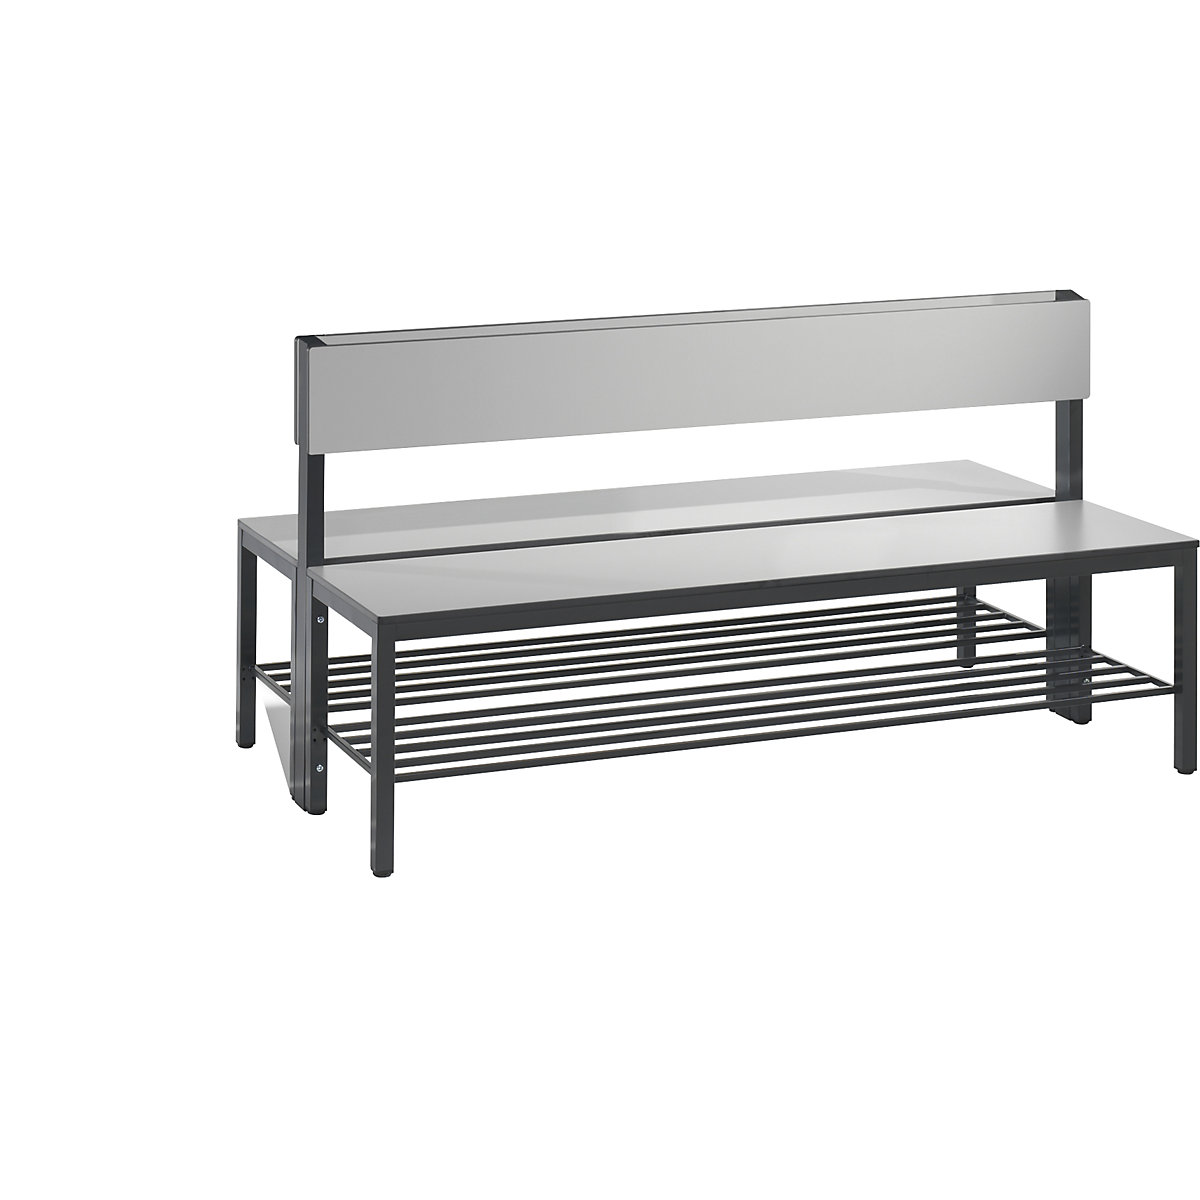 Šatnová lavice BASIC PLUS, oboustranná – C+P, plocha sedáku z HPL, poloviční výška, rošt na obuv, délka 1500 mm, stříbrošedá-4